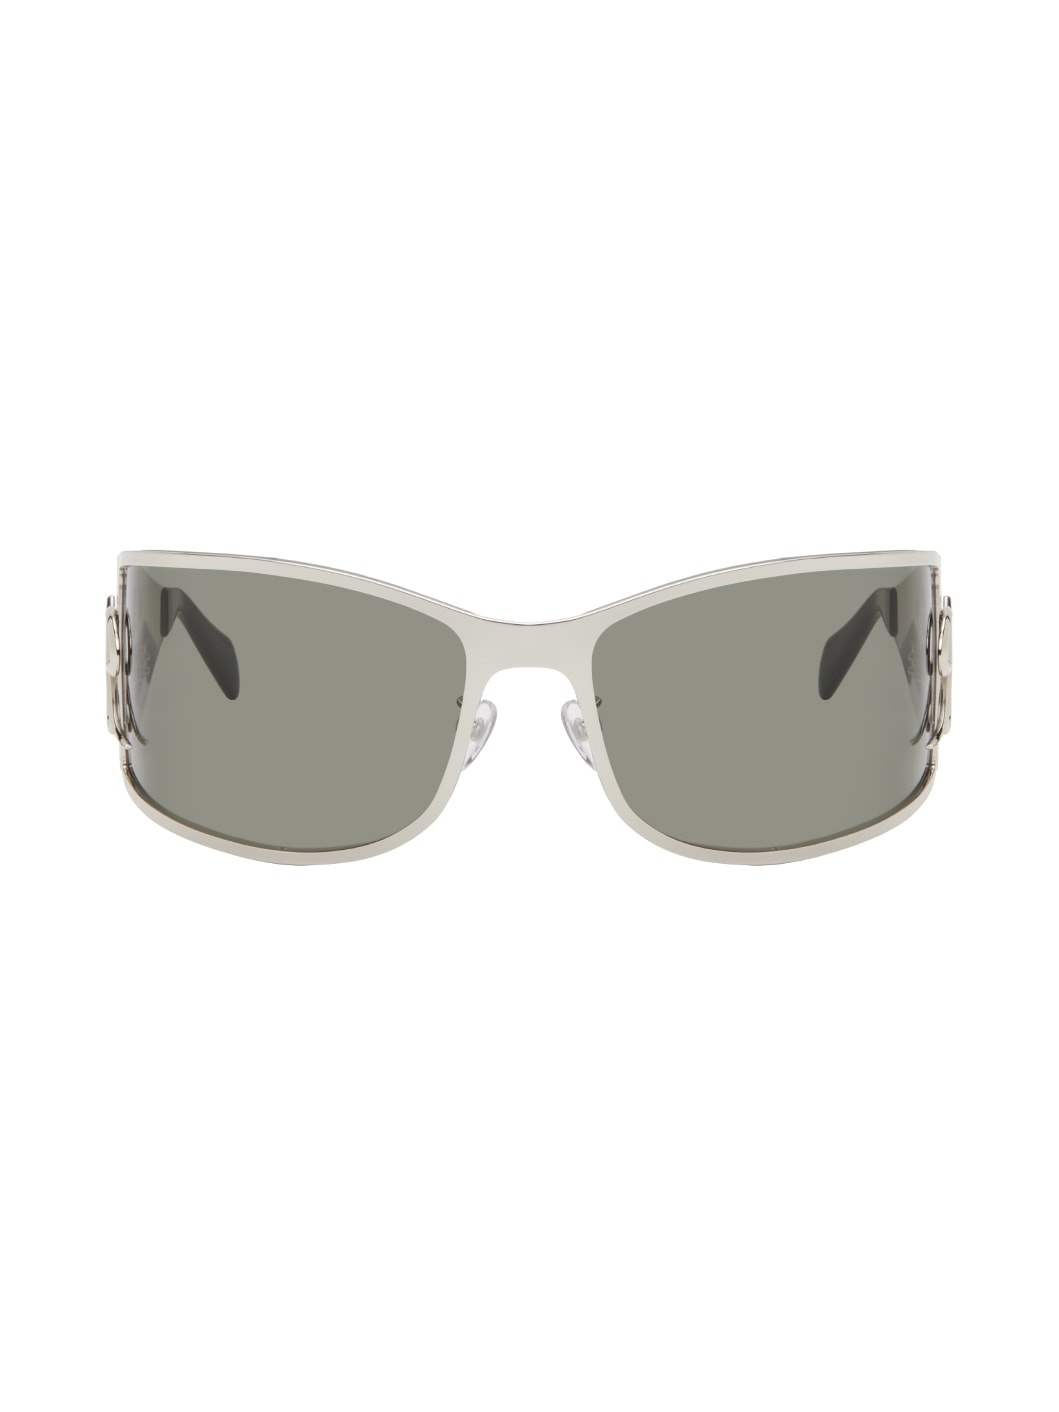 Silver Metal Wraparound Sunglasses - 1